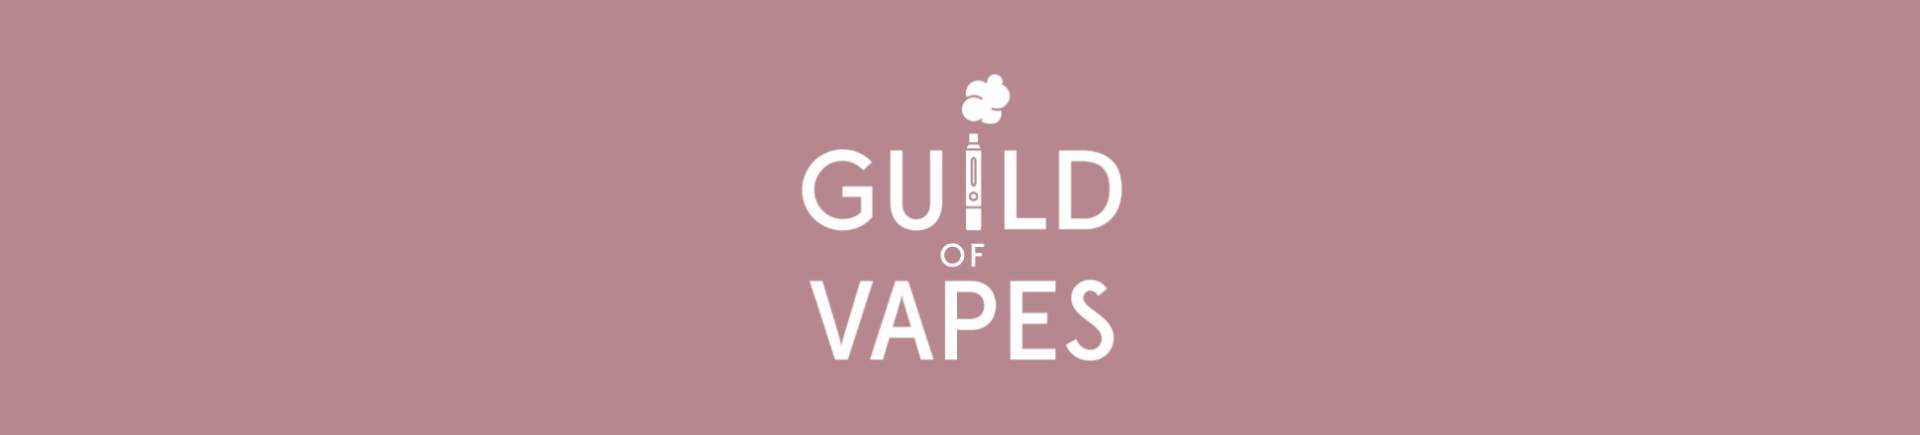 guild of vapes